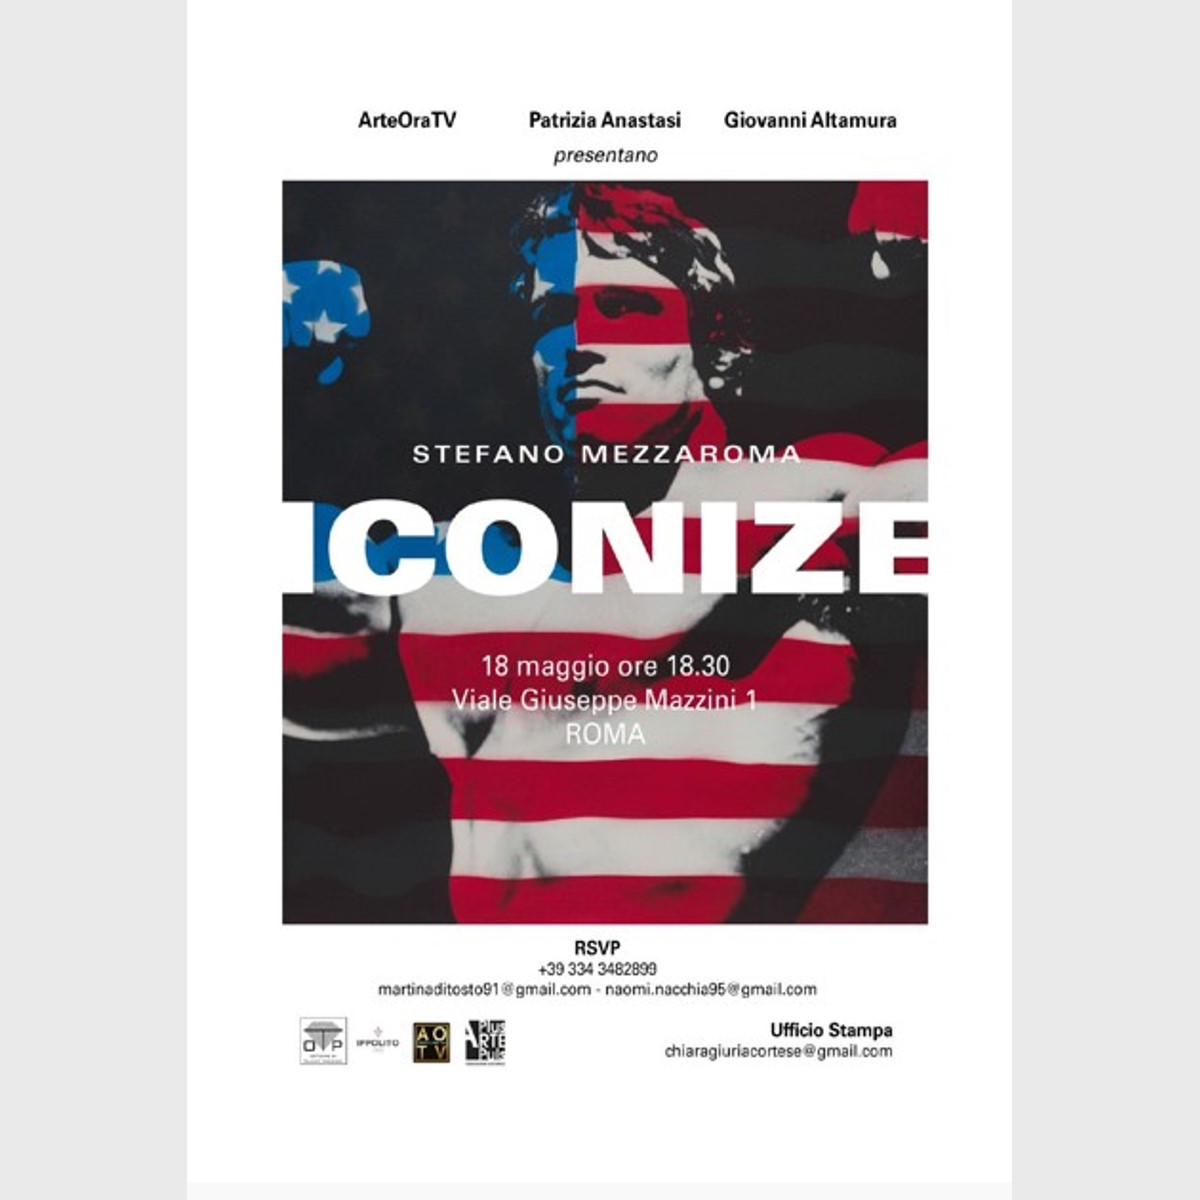 Iconize, la personale di Stefano Mezzaroma in esposizione il 18 maggio alla Galleria Patrizia Anastasi a Roma